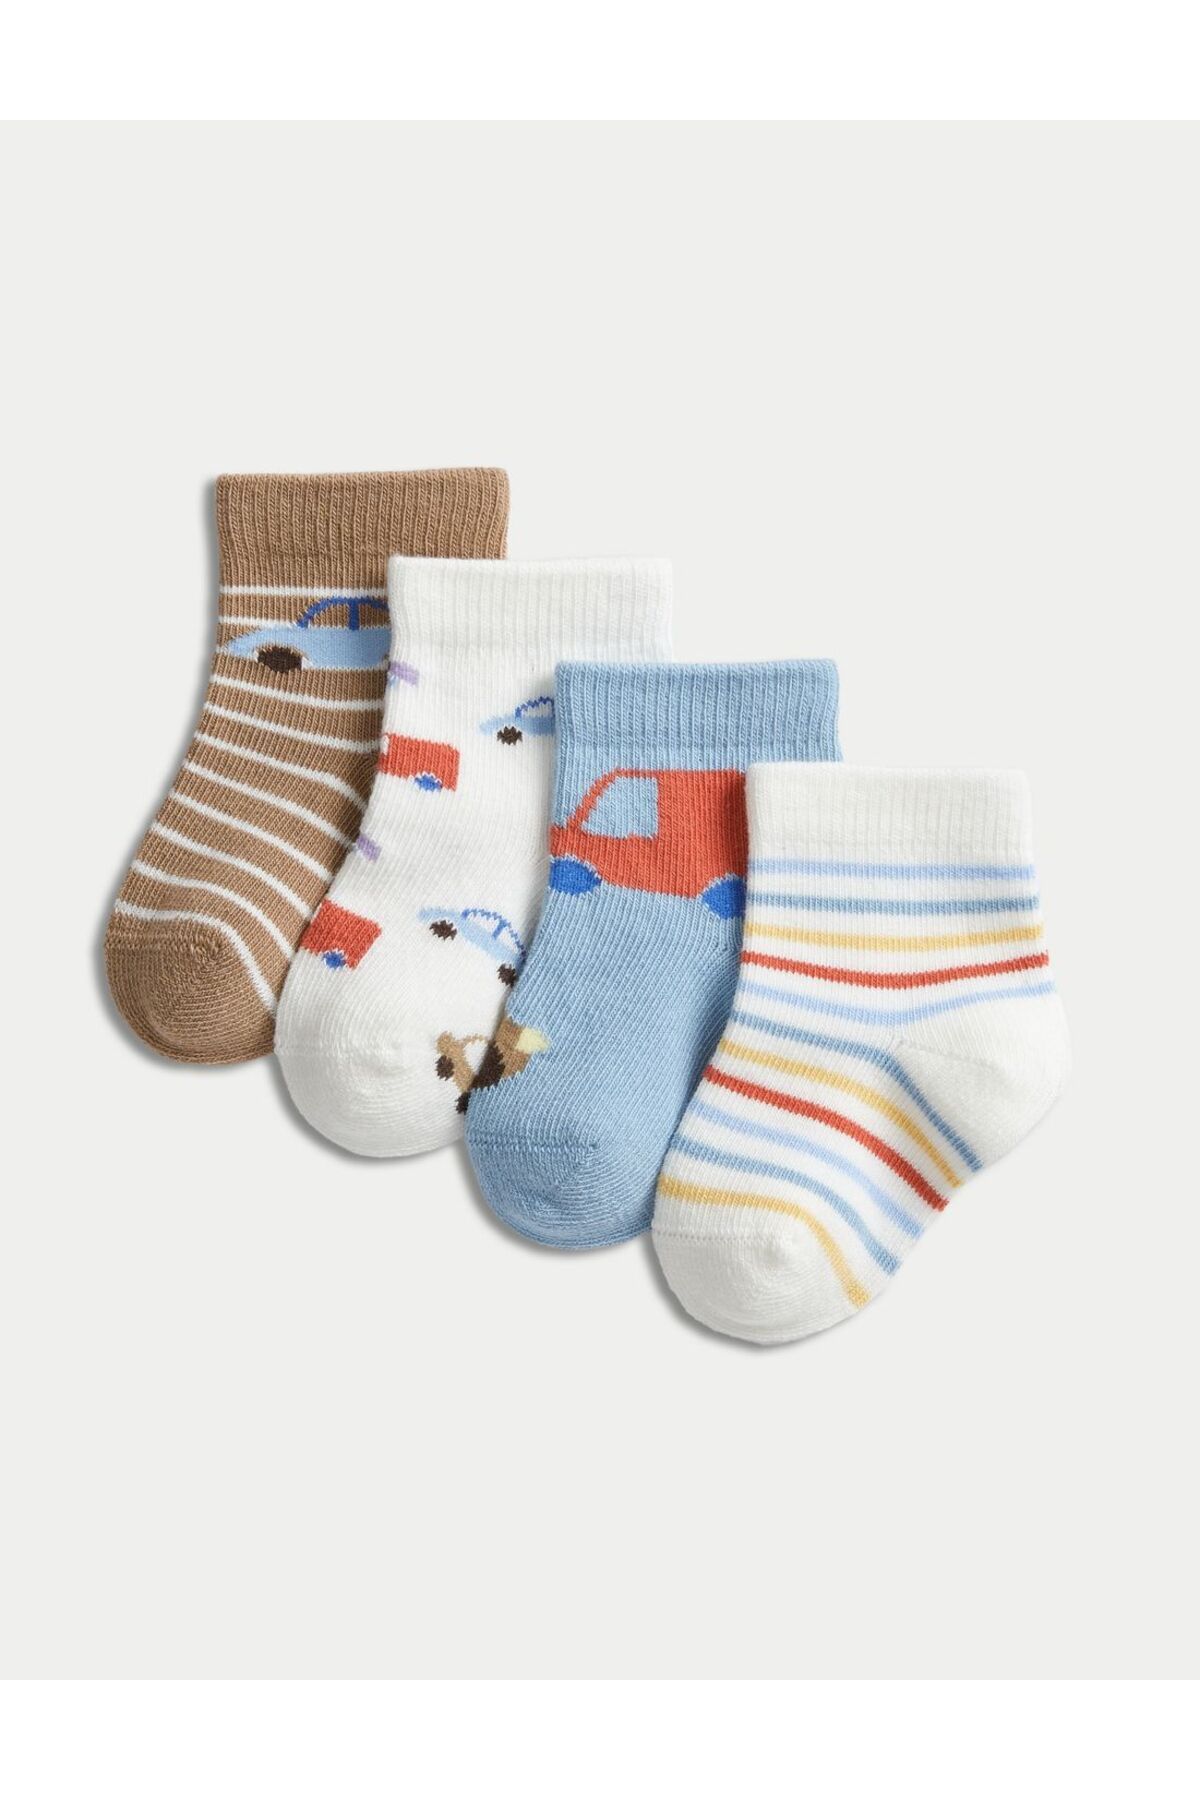 Marks & Spencer 4'lü Araba Desenli Bebek Çorabı (0-3 Yaş)